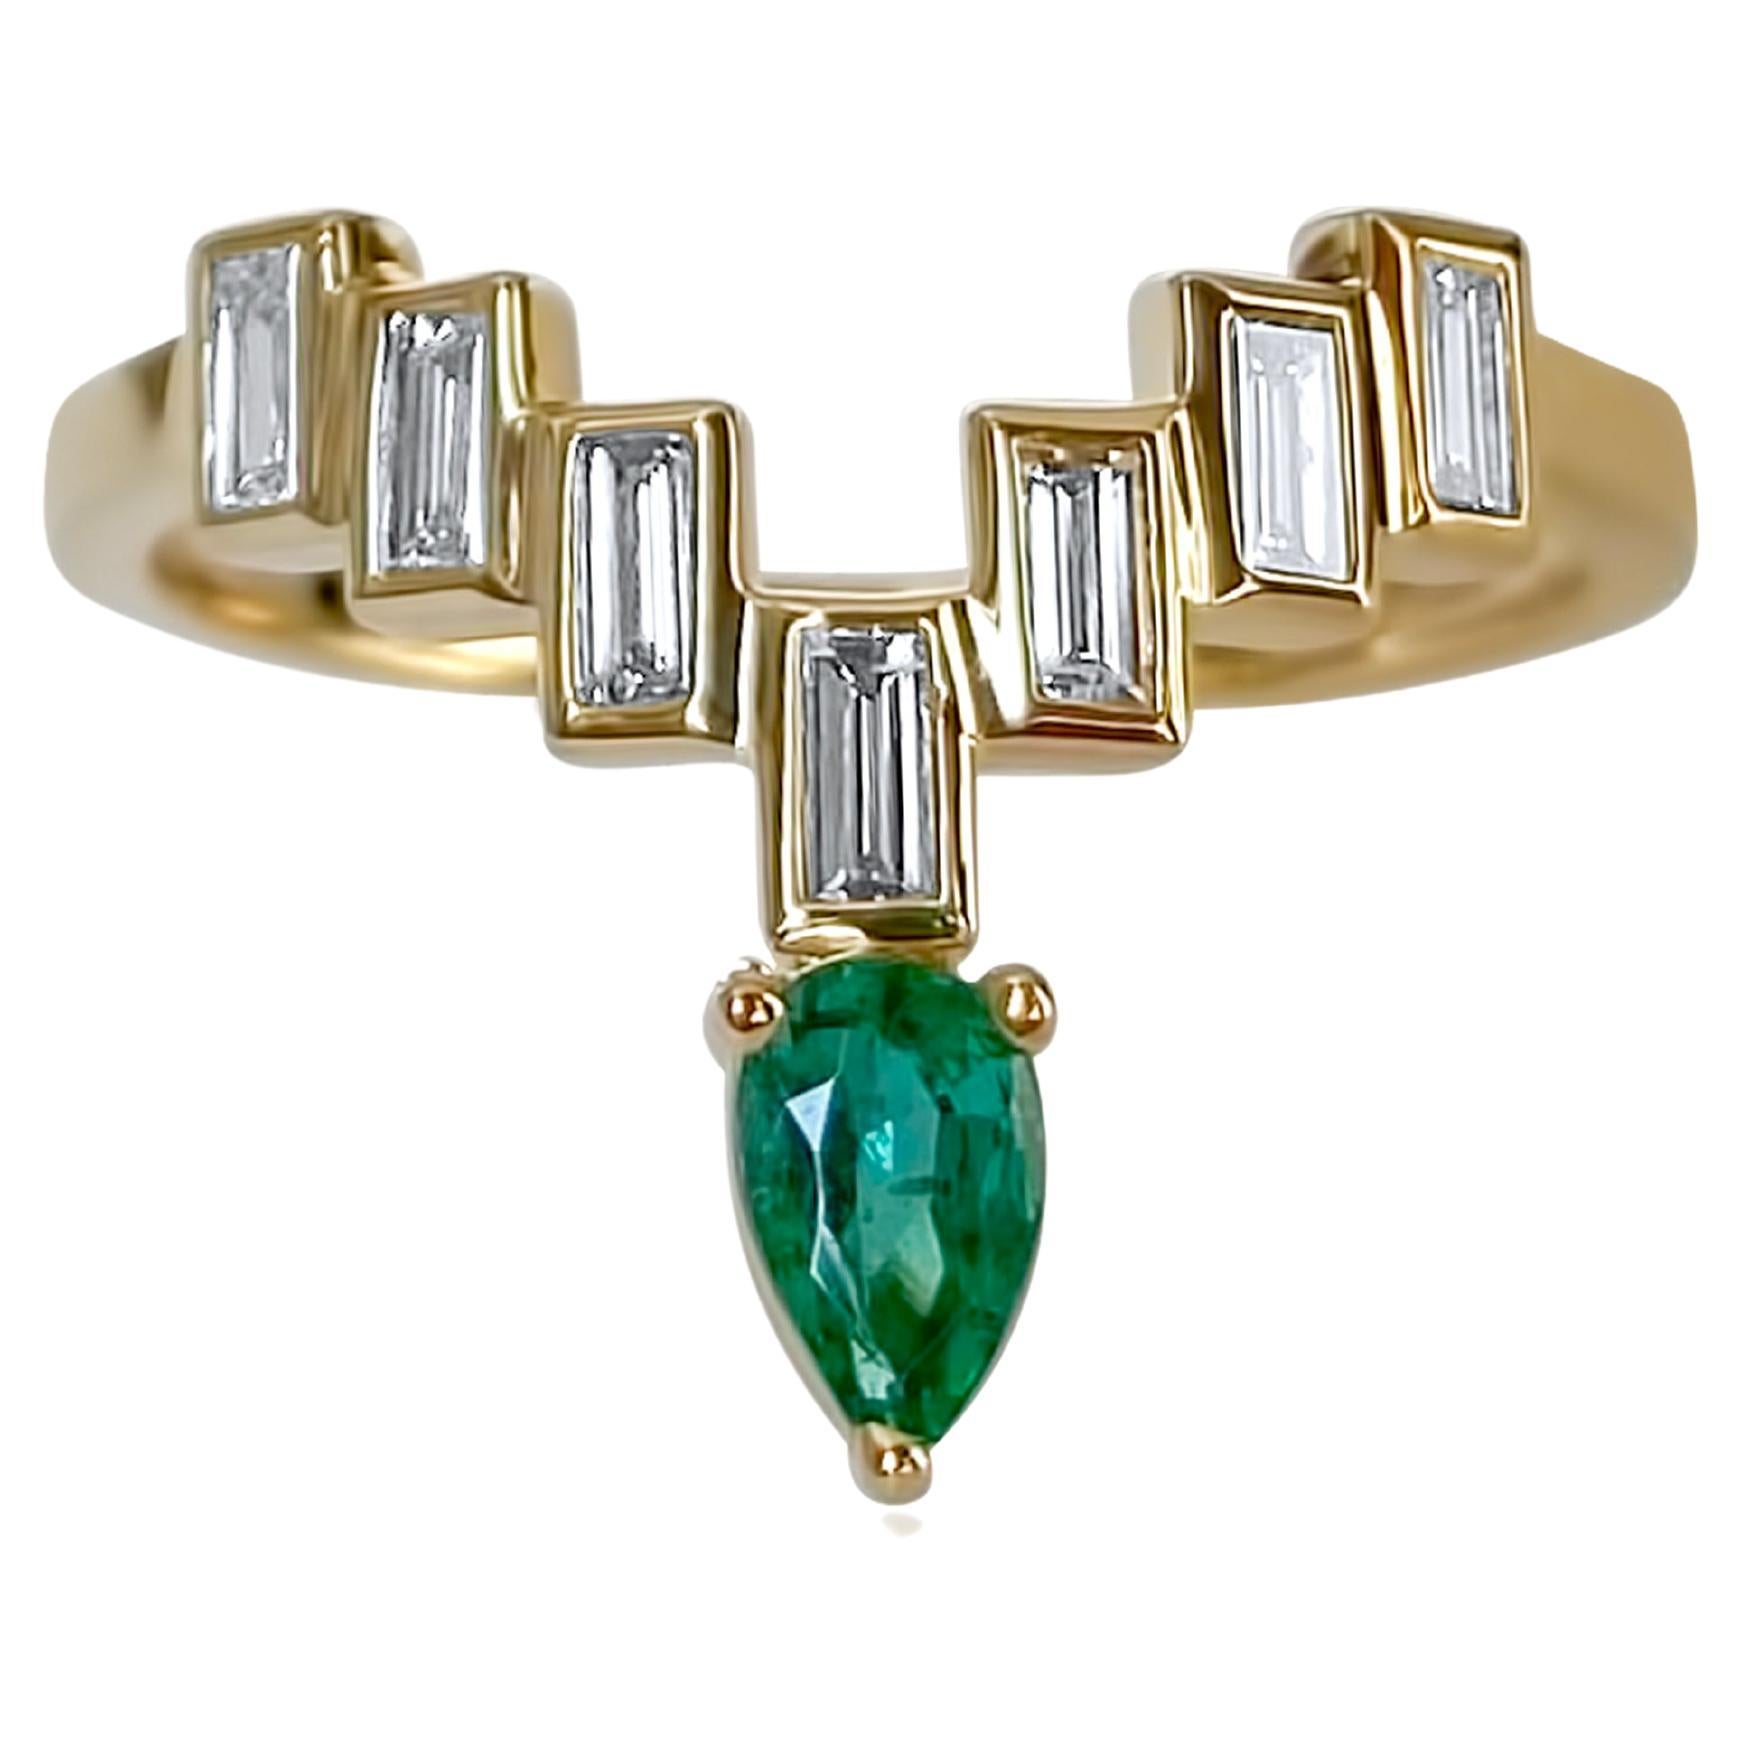 Bague « Enlightenment Celestial Crown Tiara » avec diamants baguettes et émeraudes